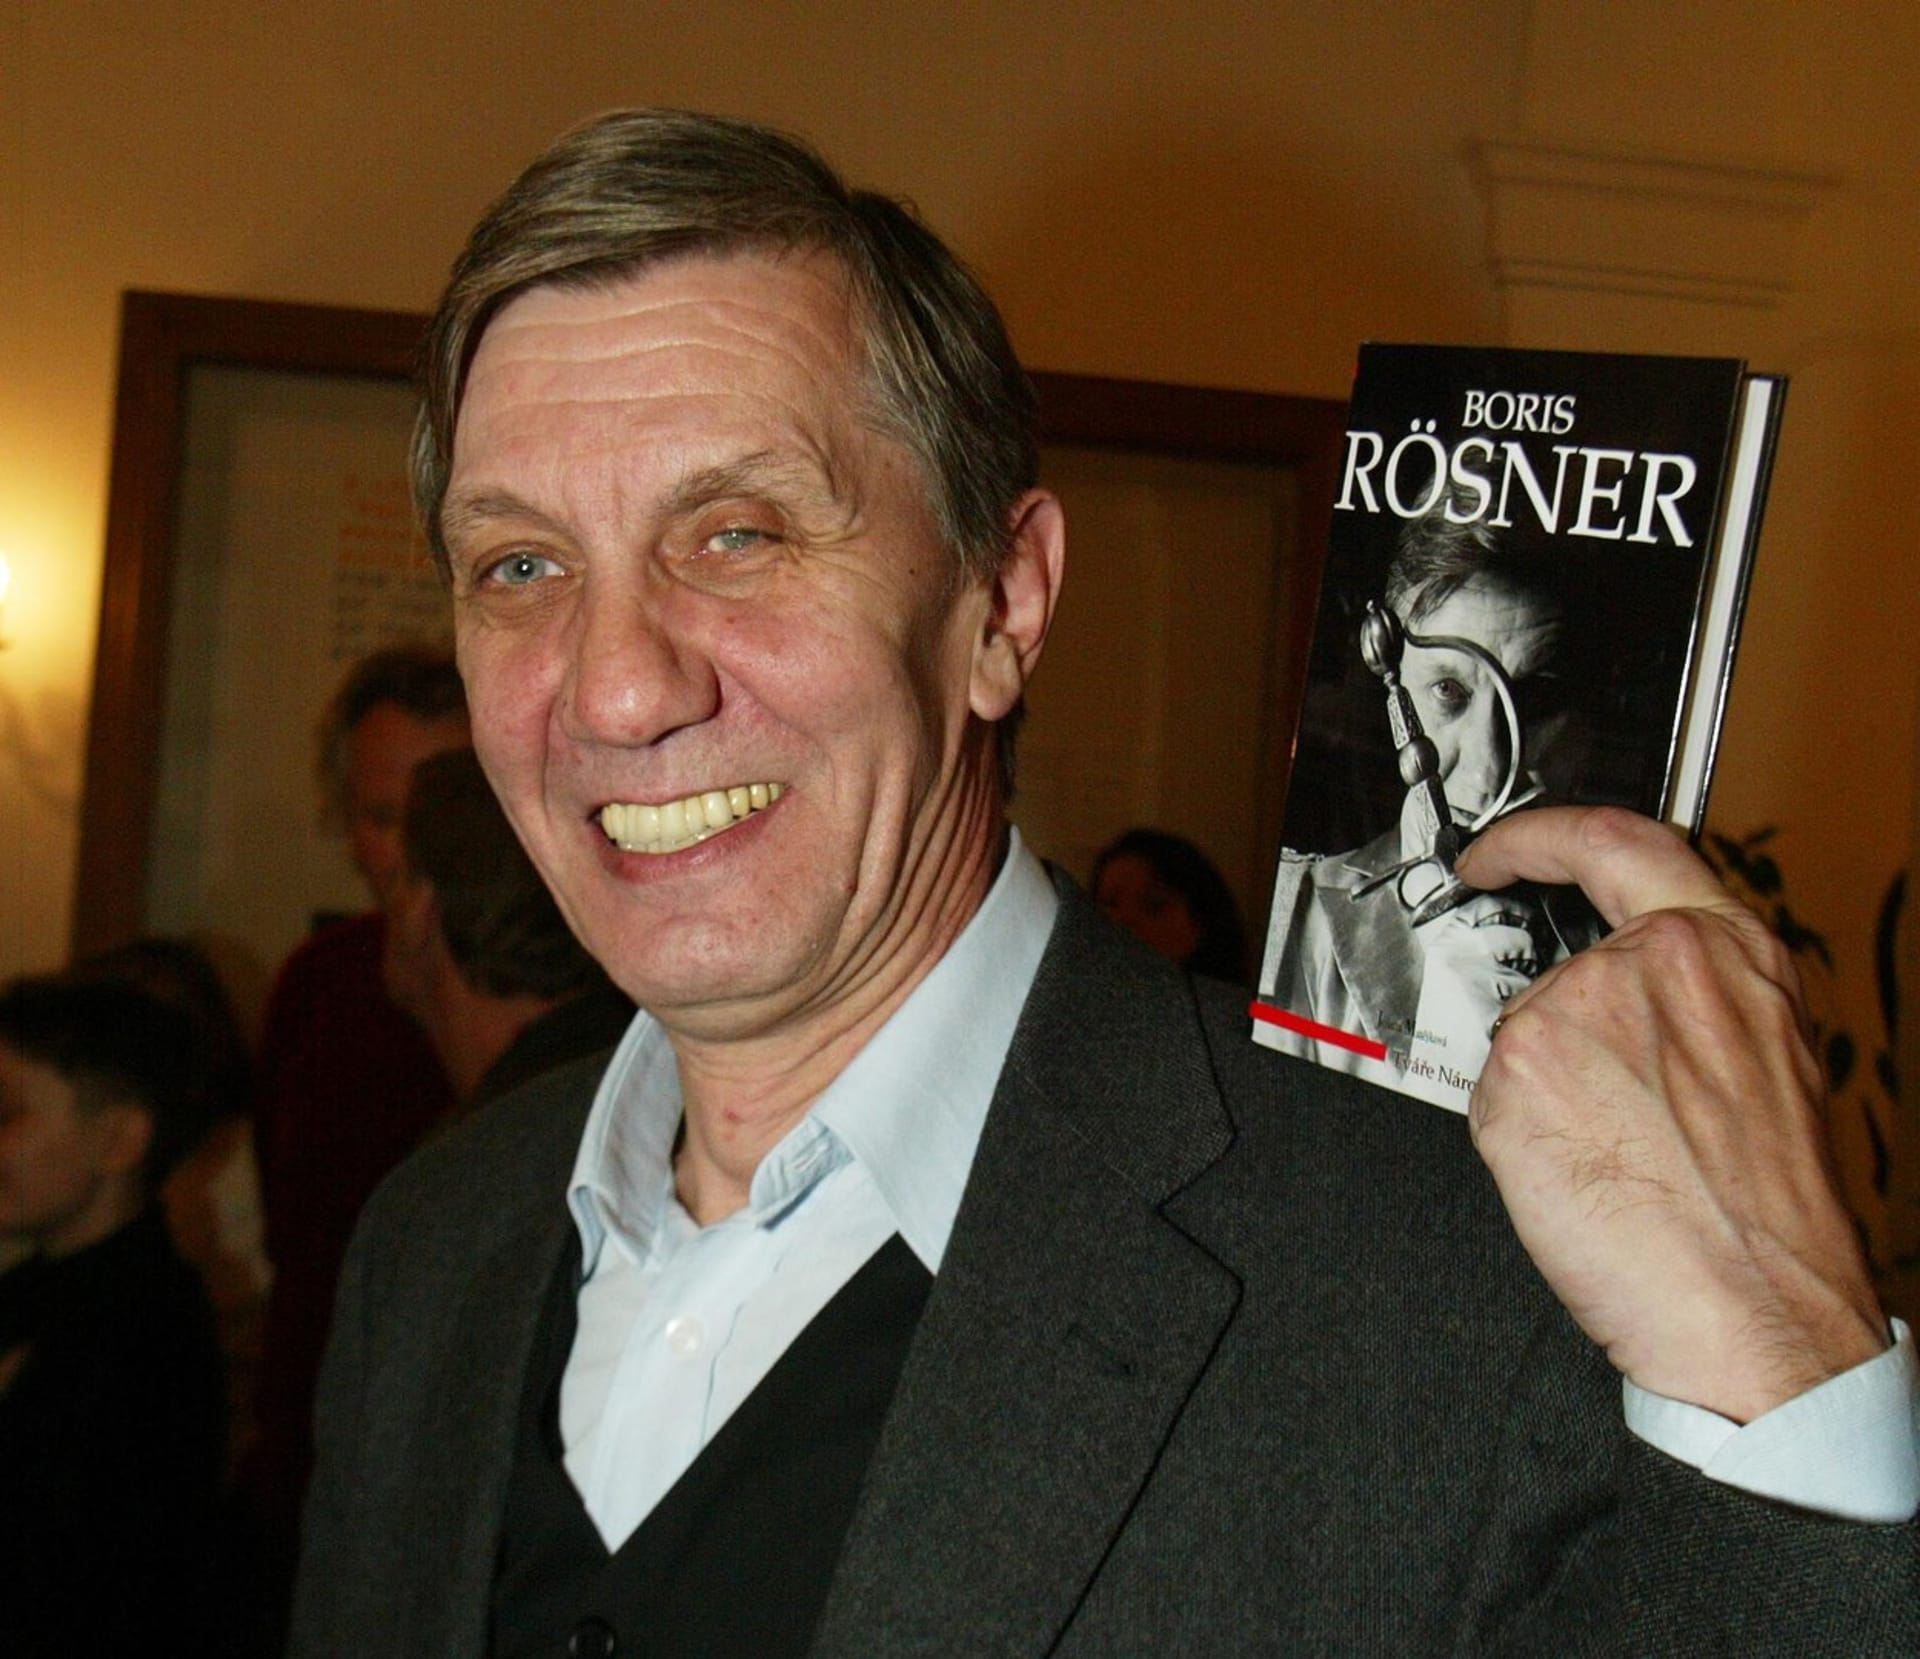 Boris Rösner napsal životopisnou knihu, která vyšla jen krátce předtím, než se u něj zrádná nemoc objevila.